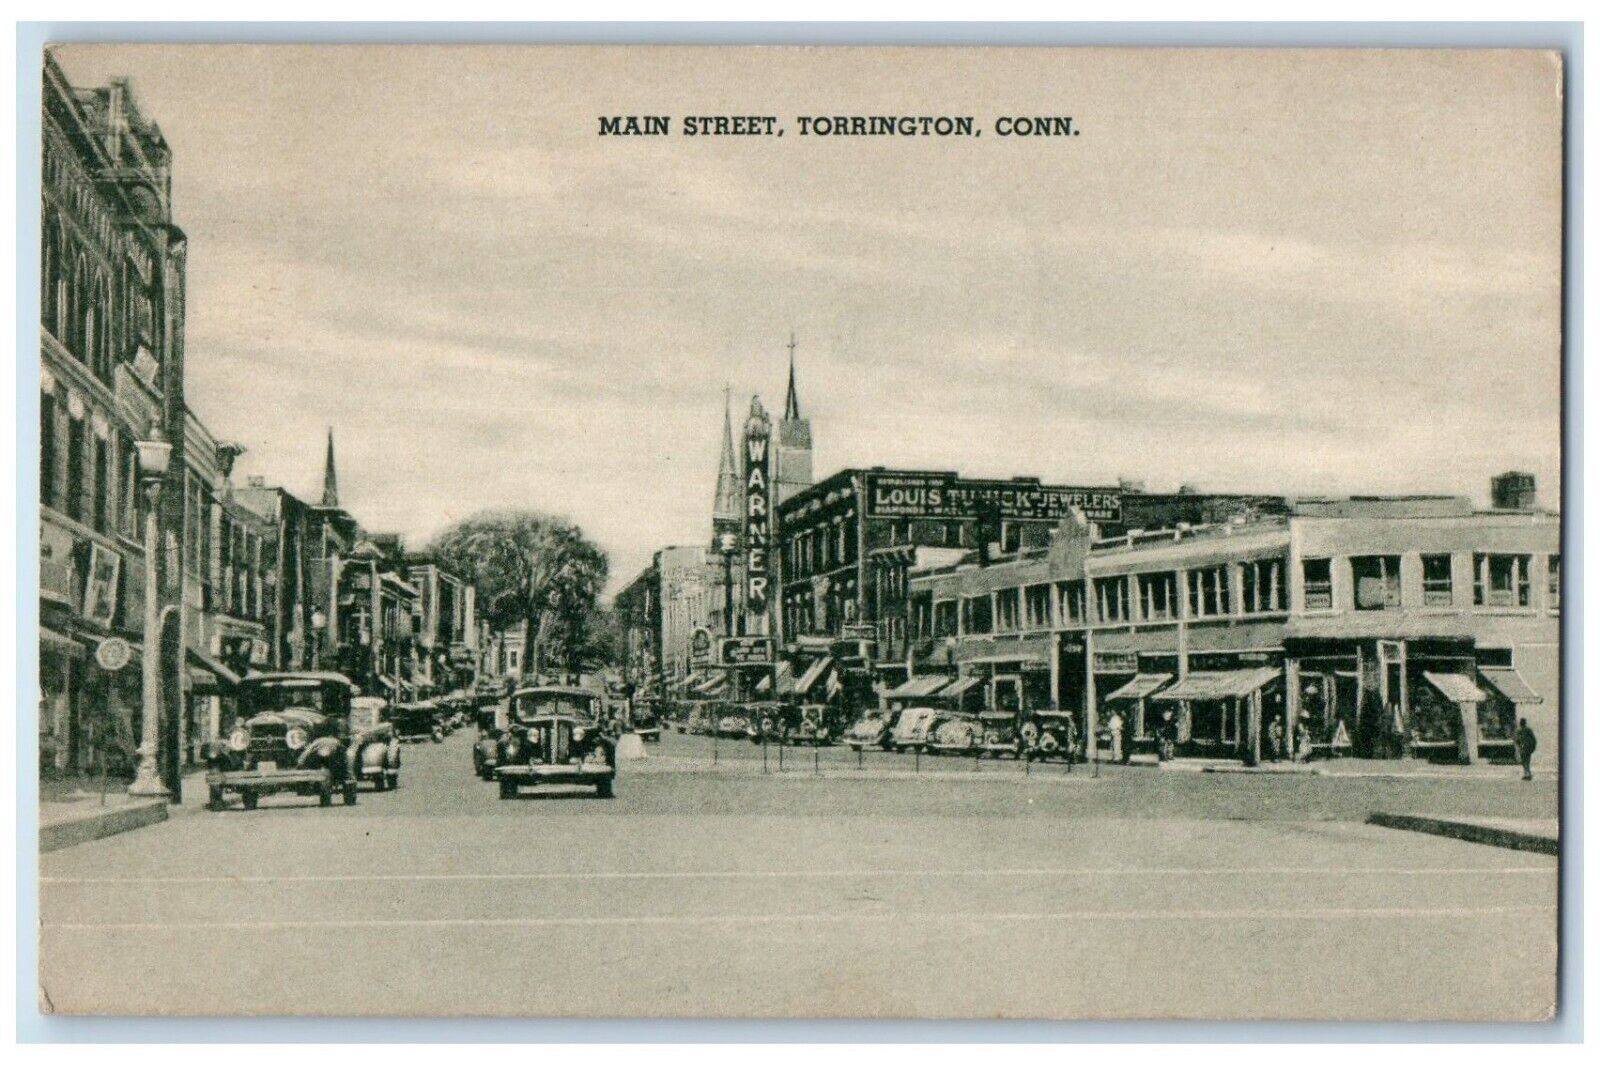 1939 Main Street Classic Cars Building Torrington Connecticut Vintage Postcard